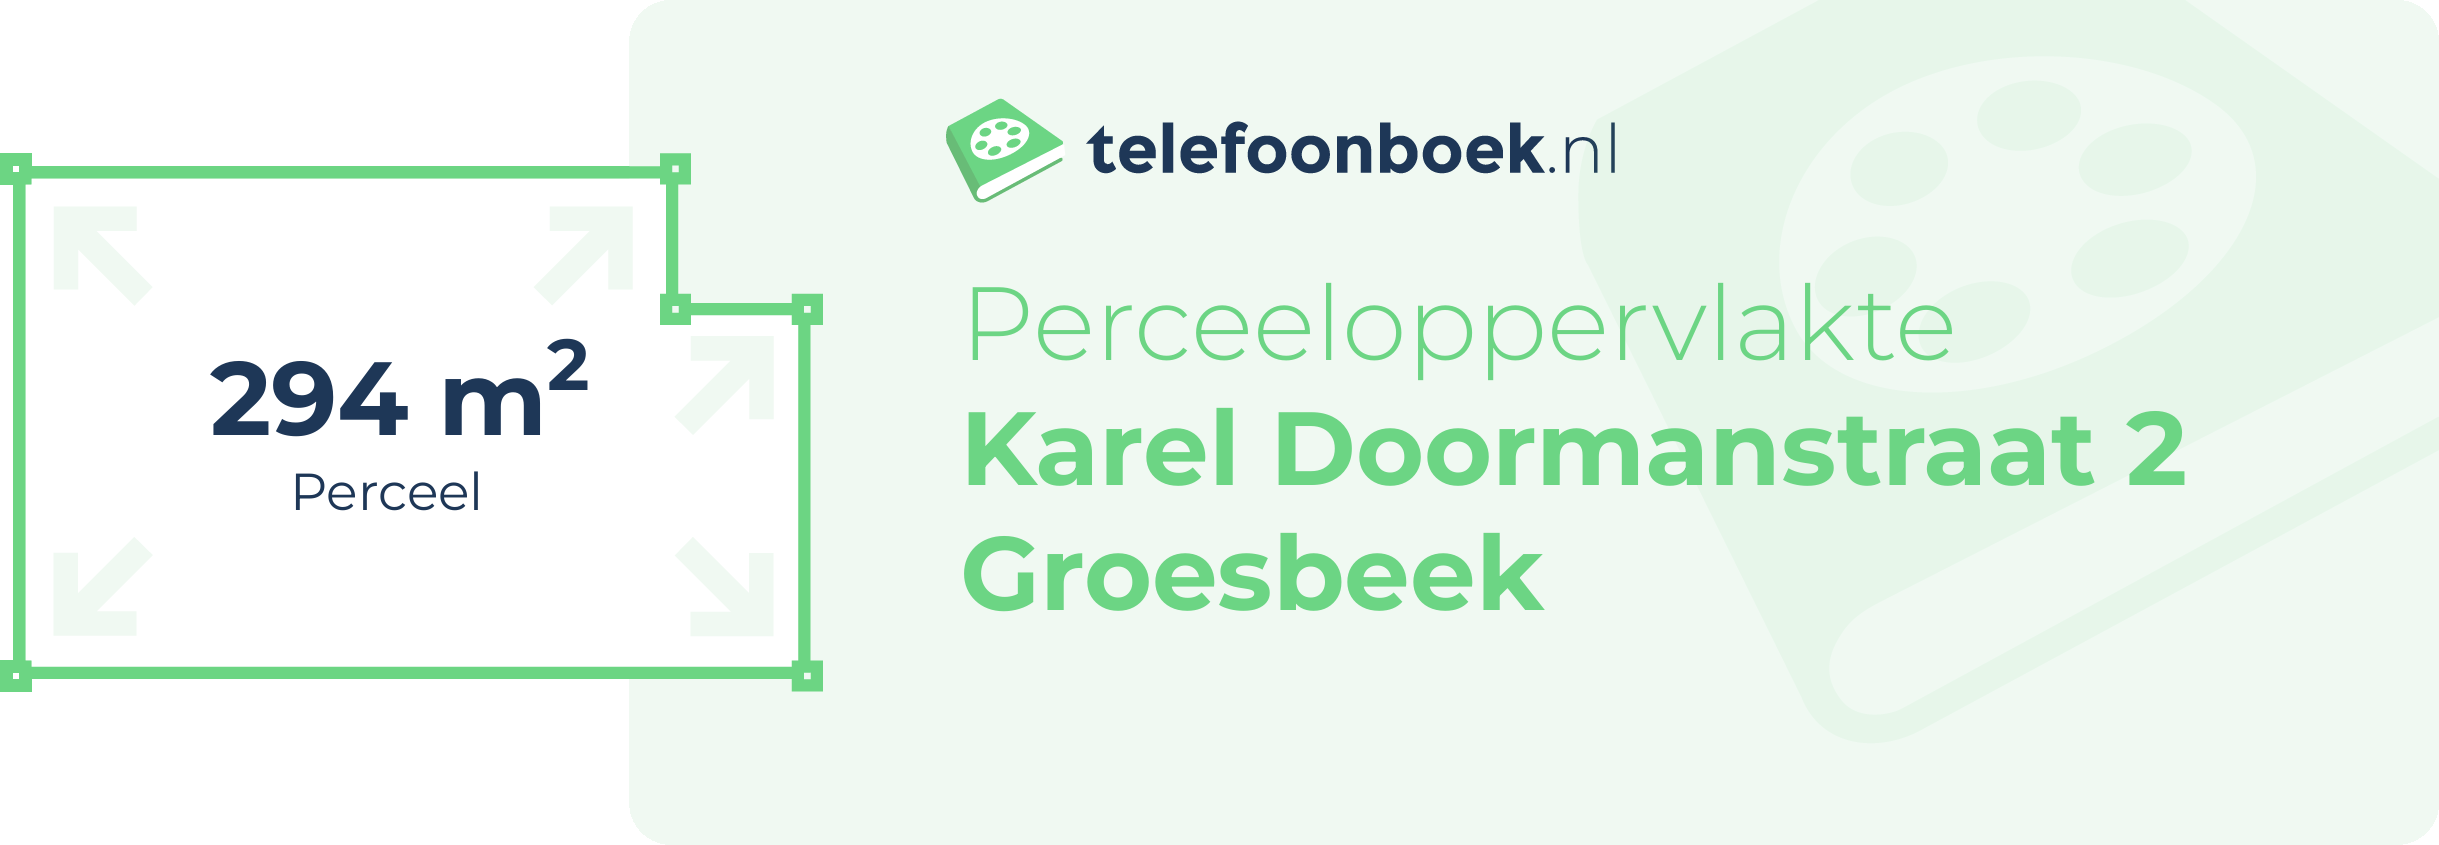 Perceeloppervlakte Karel Doormanstraat 2 Groesbeek